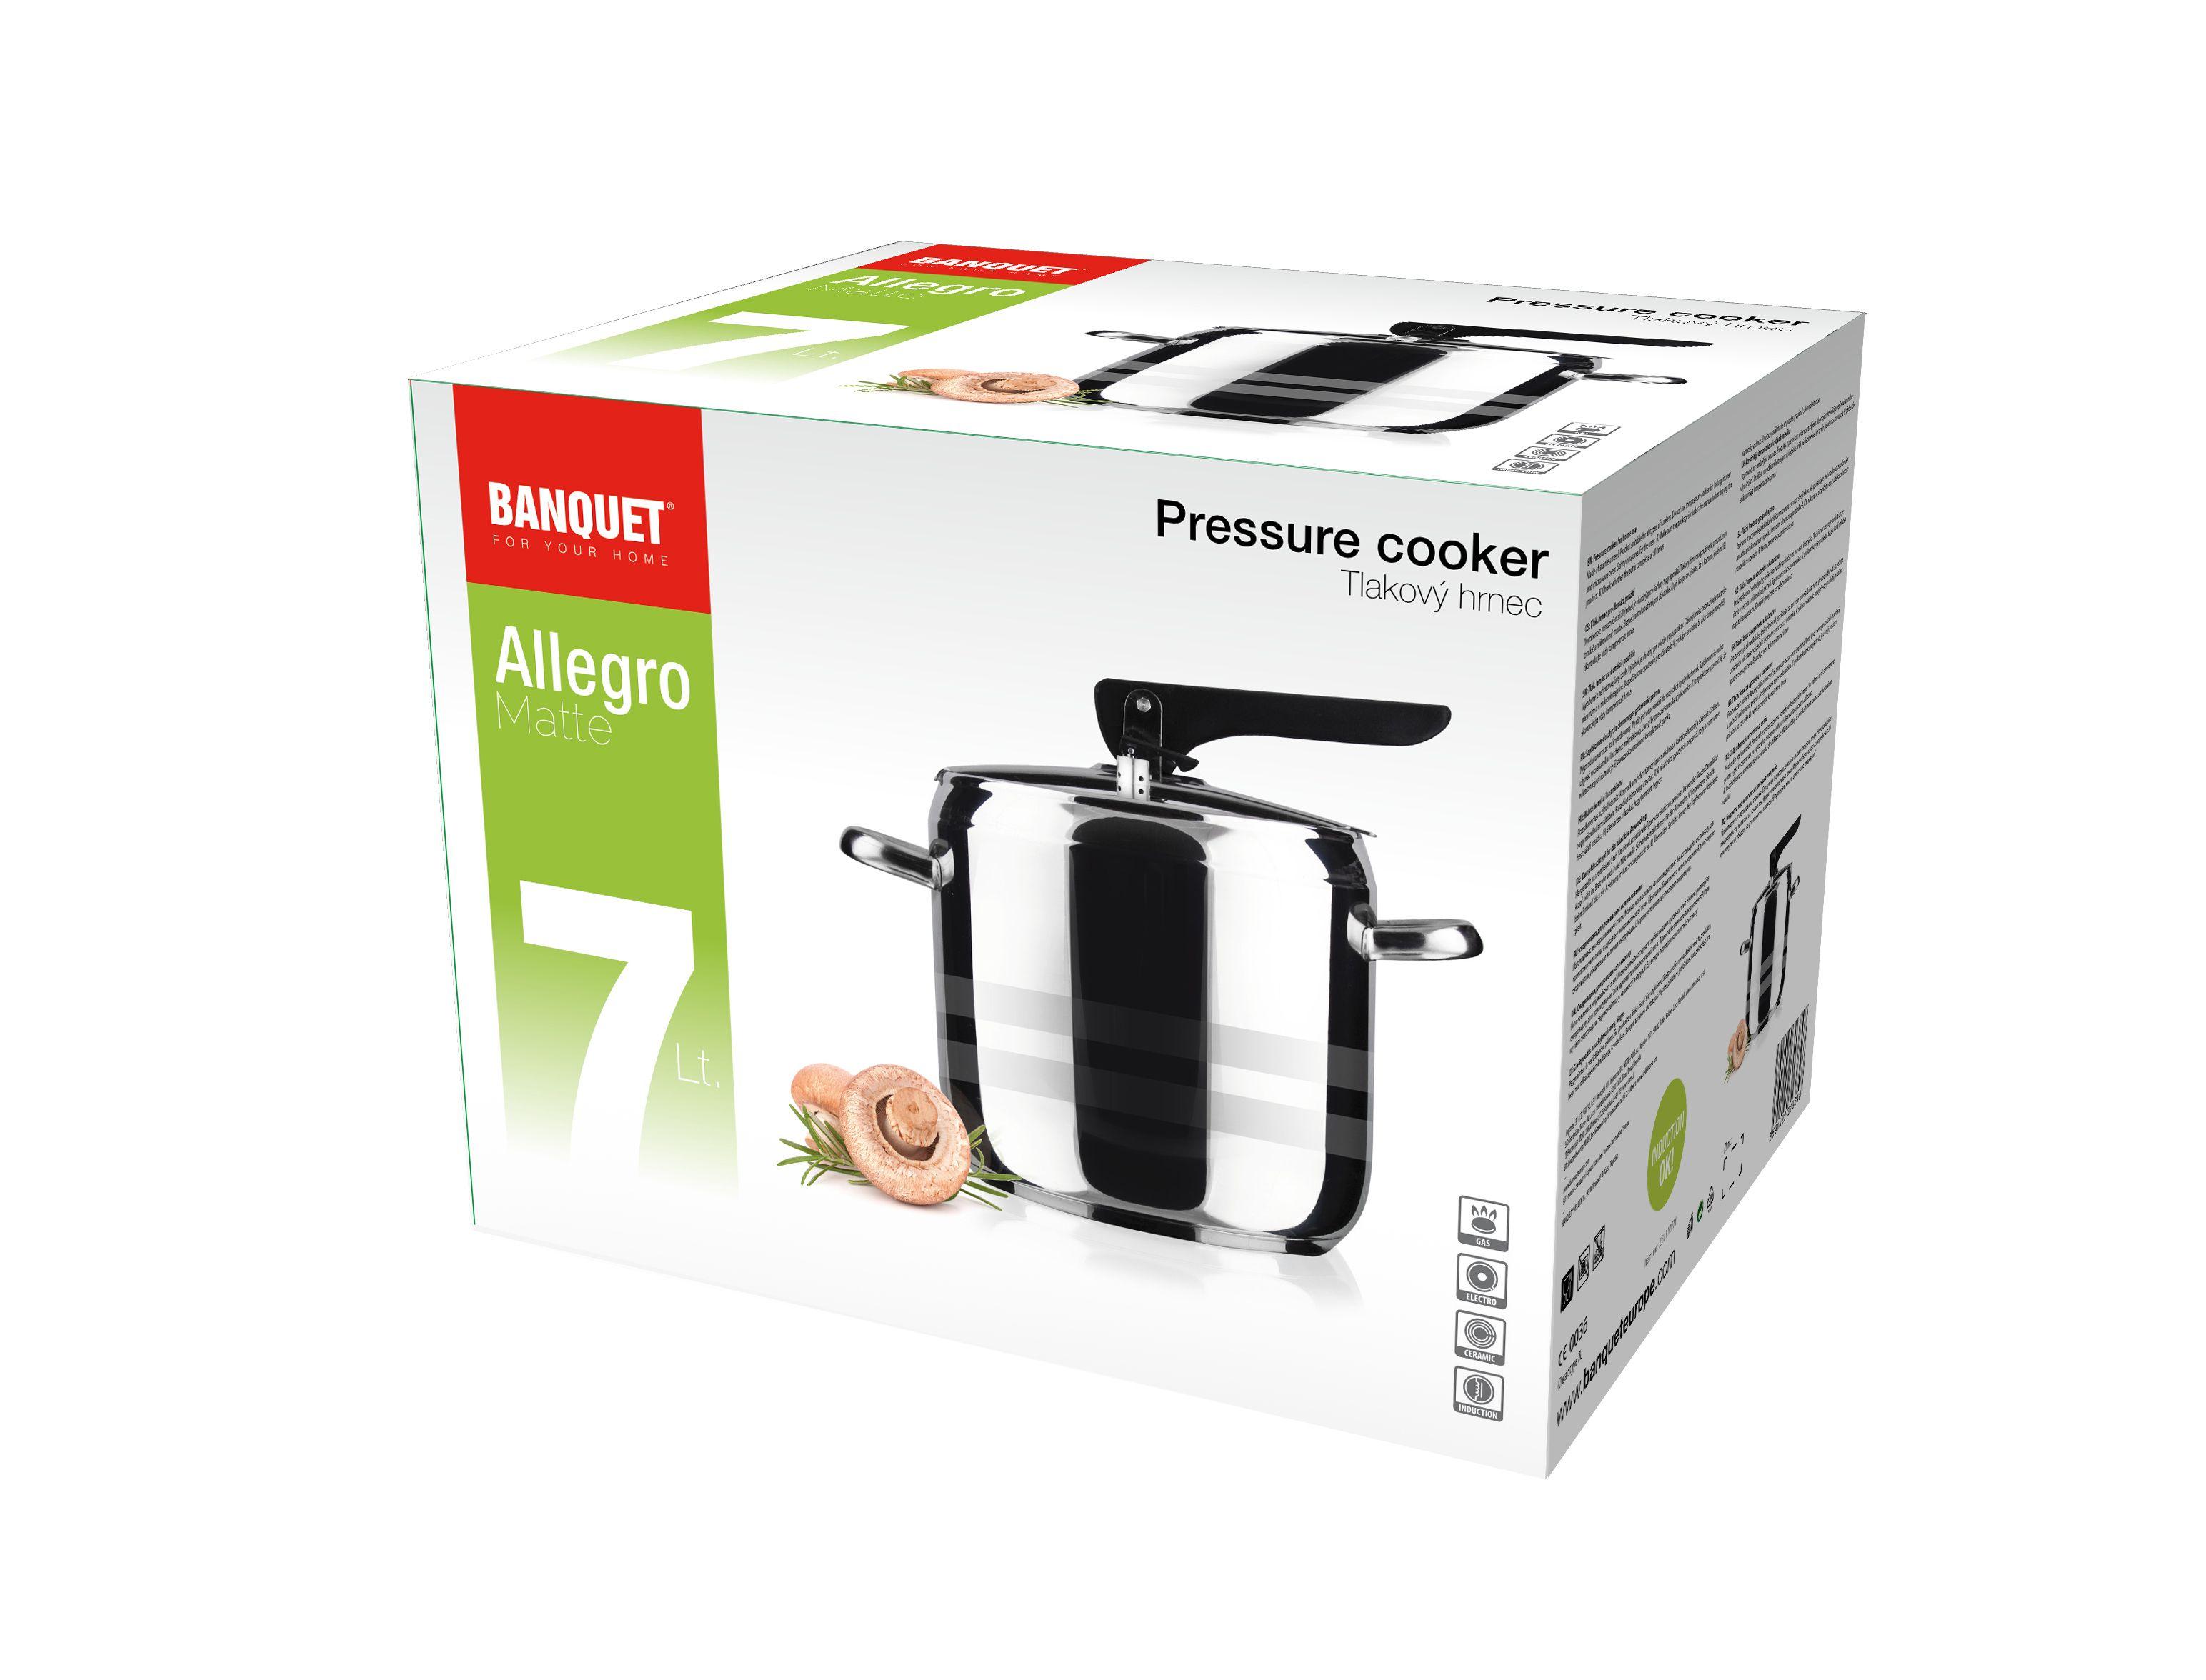 Pressure cooker 7L Allegro Matte